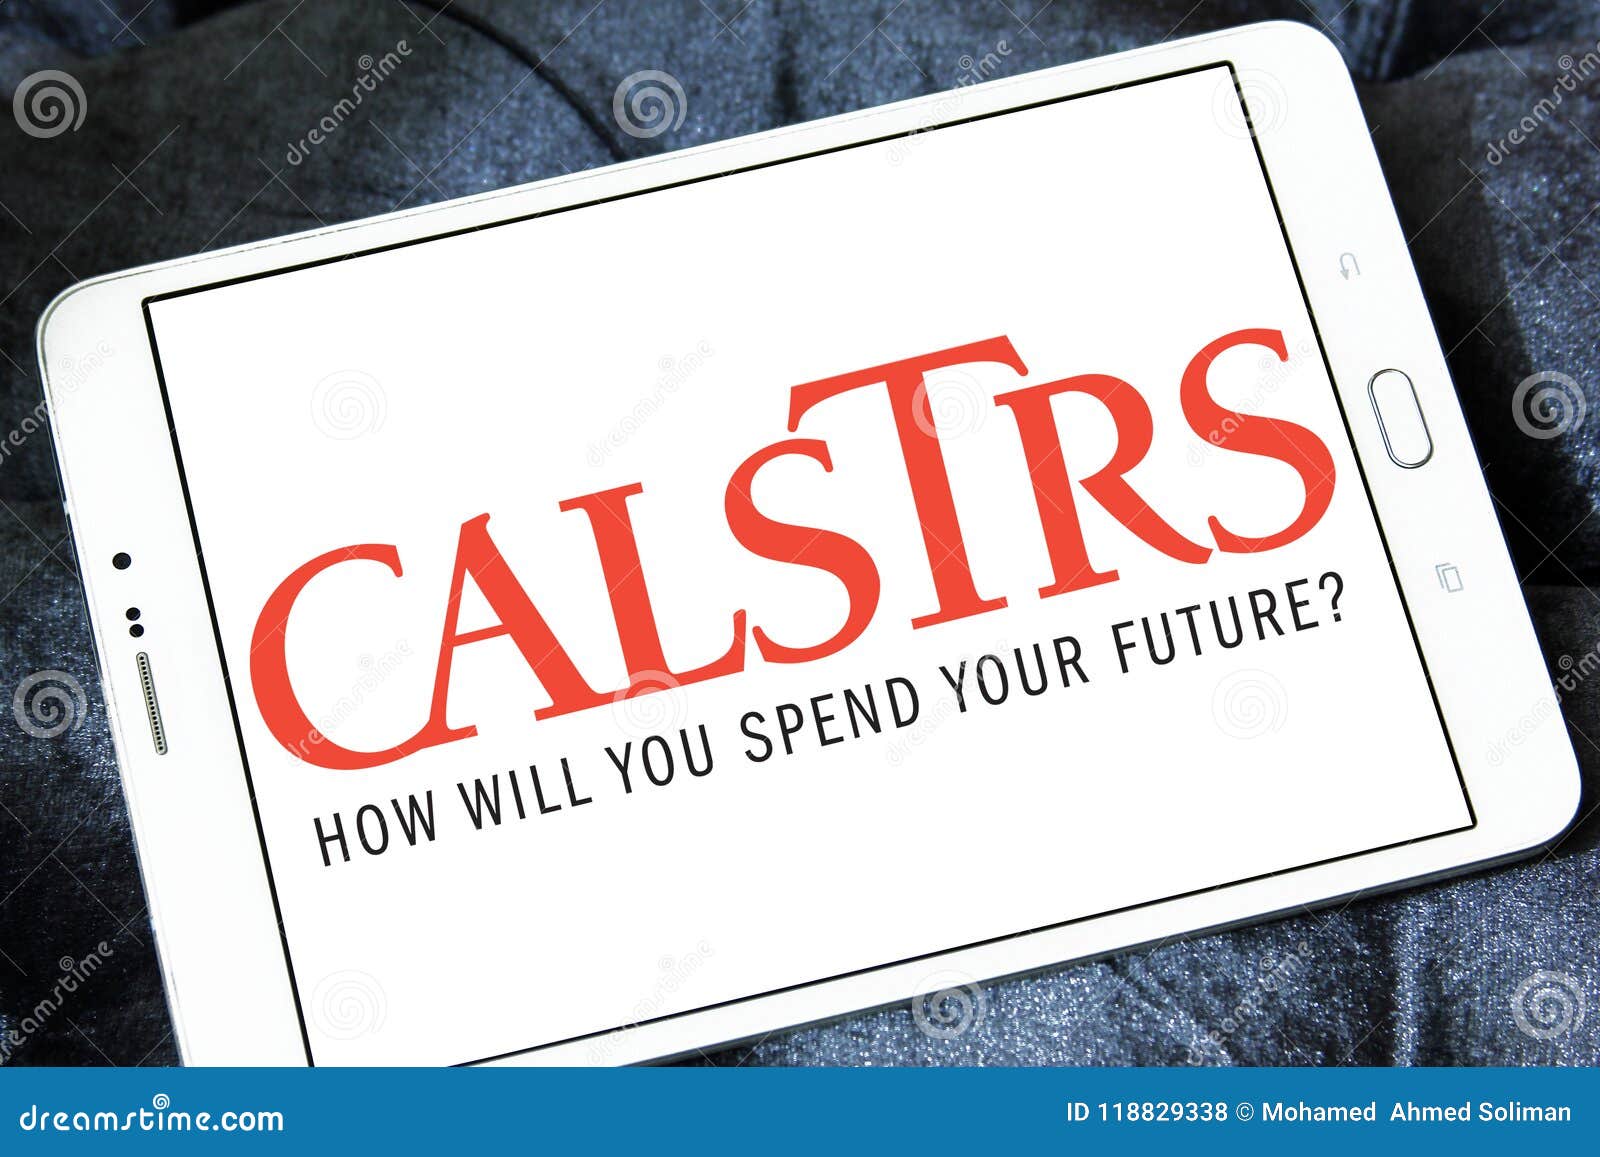 Retired Educator - CalSTRS